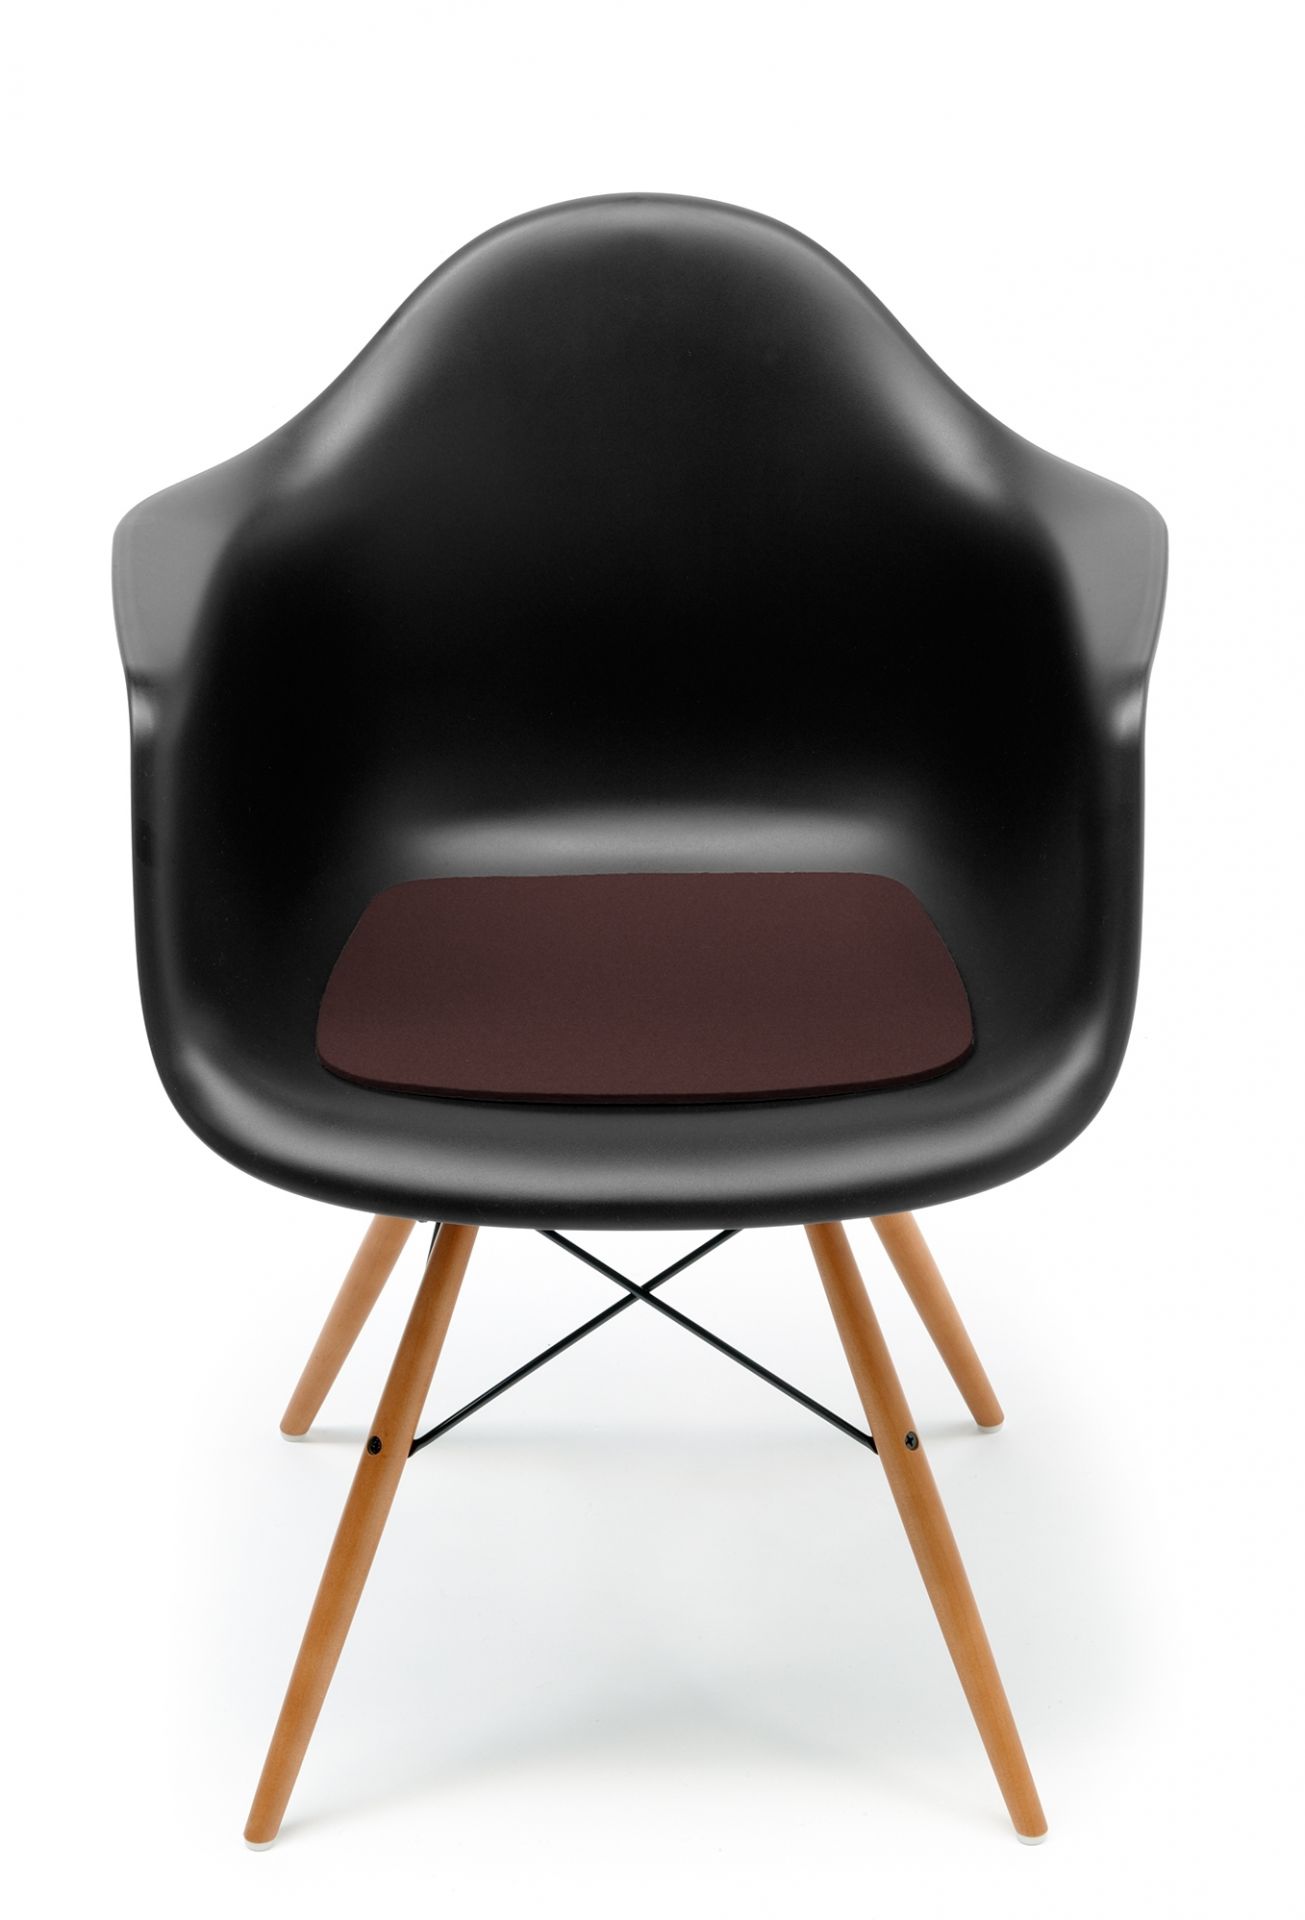 Designer Eames chair seat covers at einrichten-design